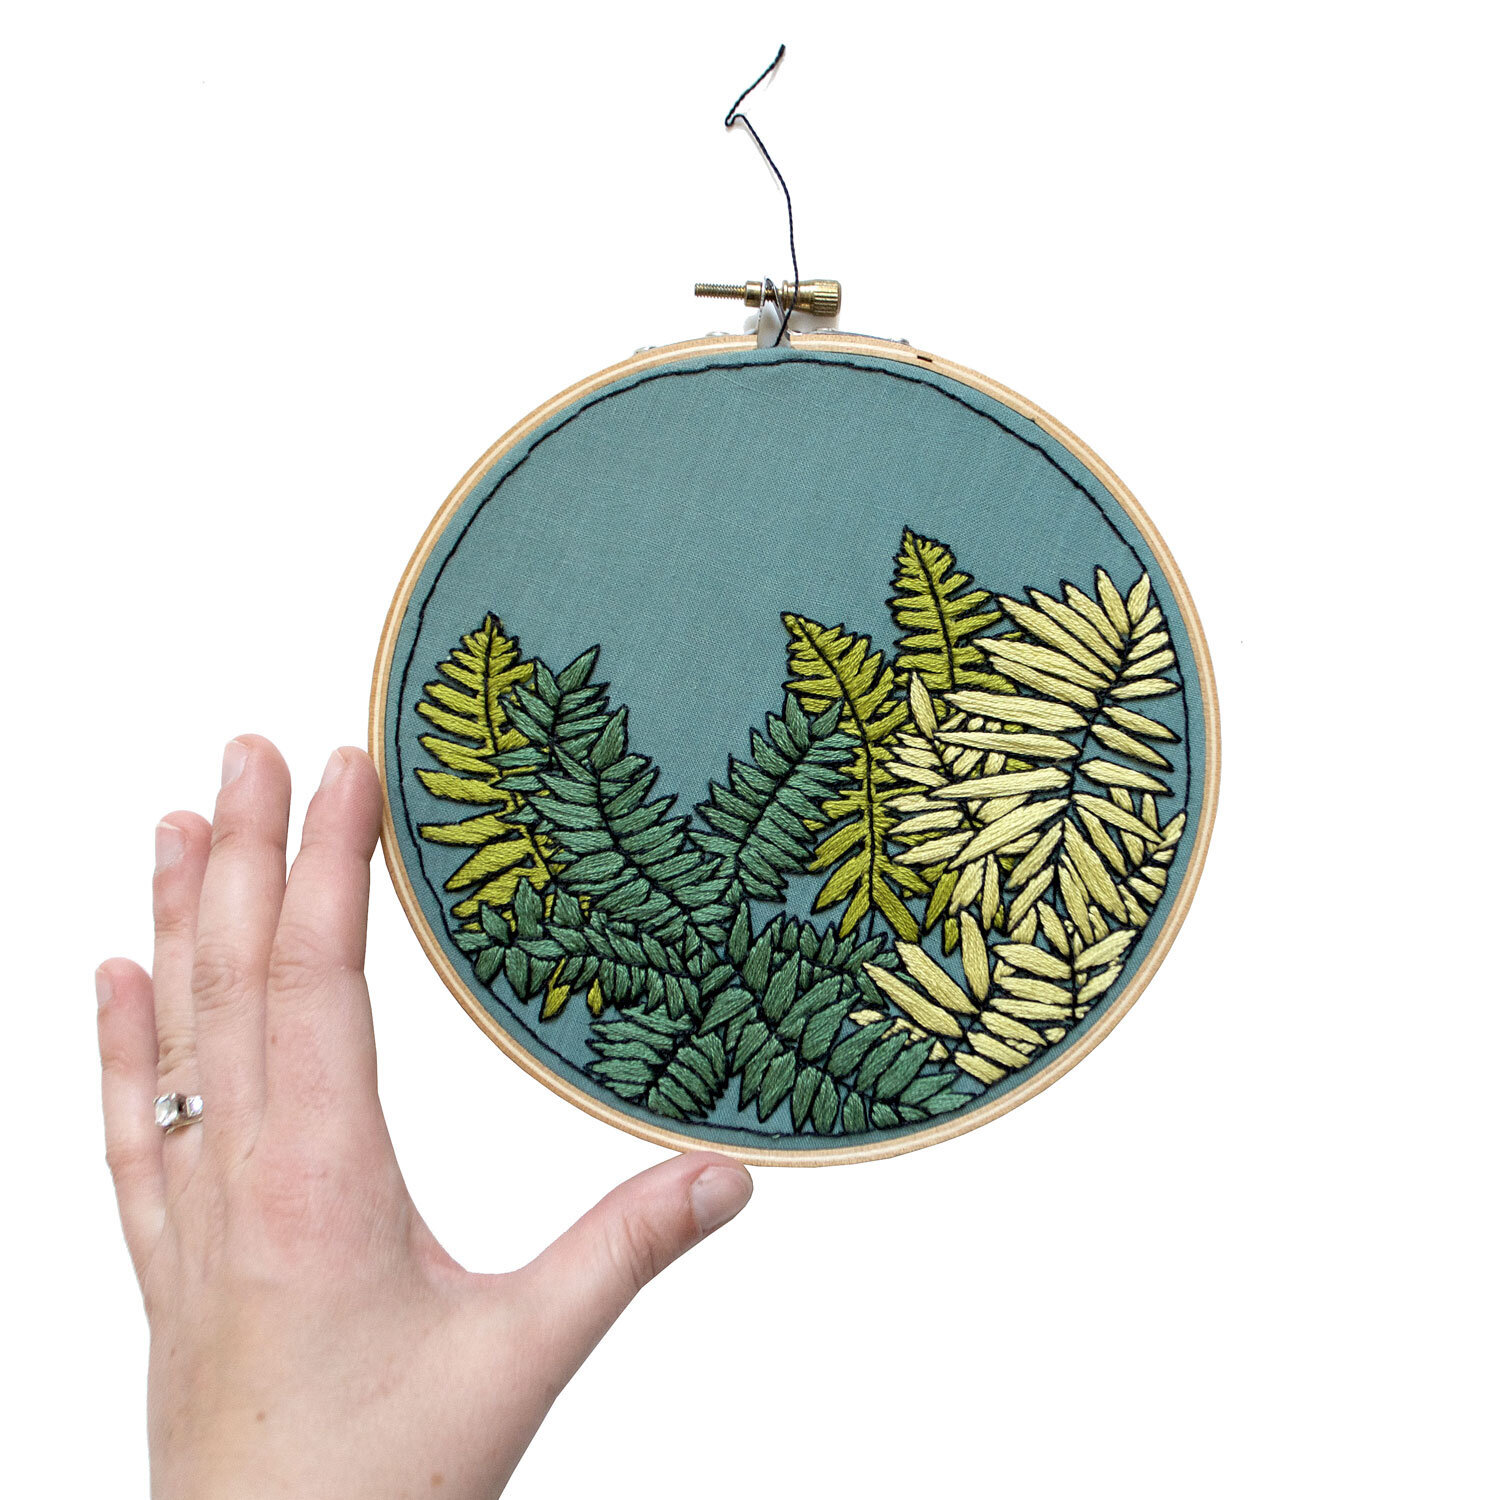 Sarah K Benning Embroidery